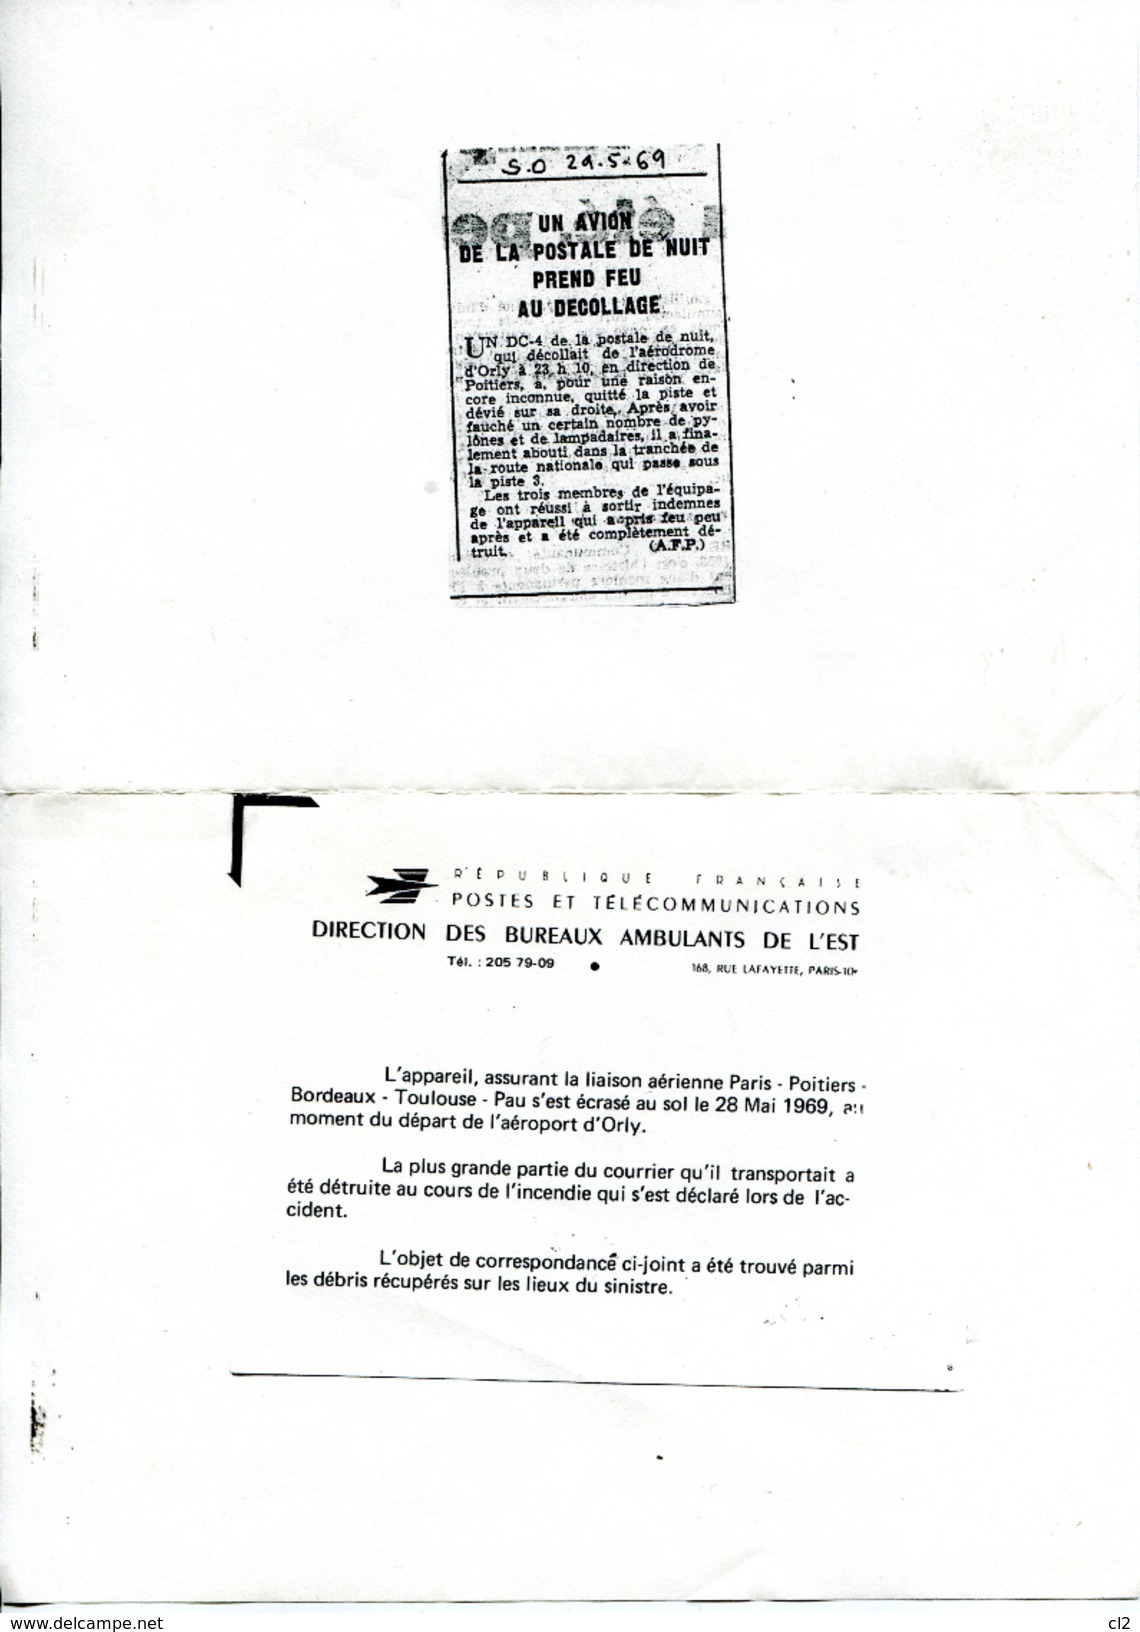 # - 28 Mai 1969 - ORLY - Accident D'un DC4 De La Postale - Courrier Ré-acheminé Par La Poste - Lettres Accidentées